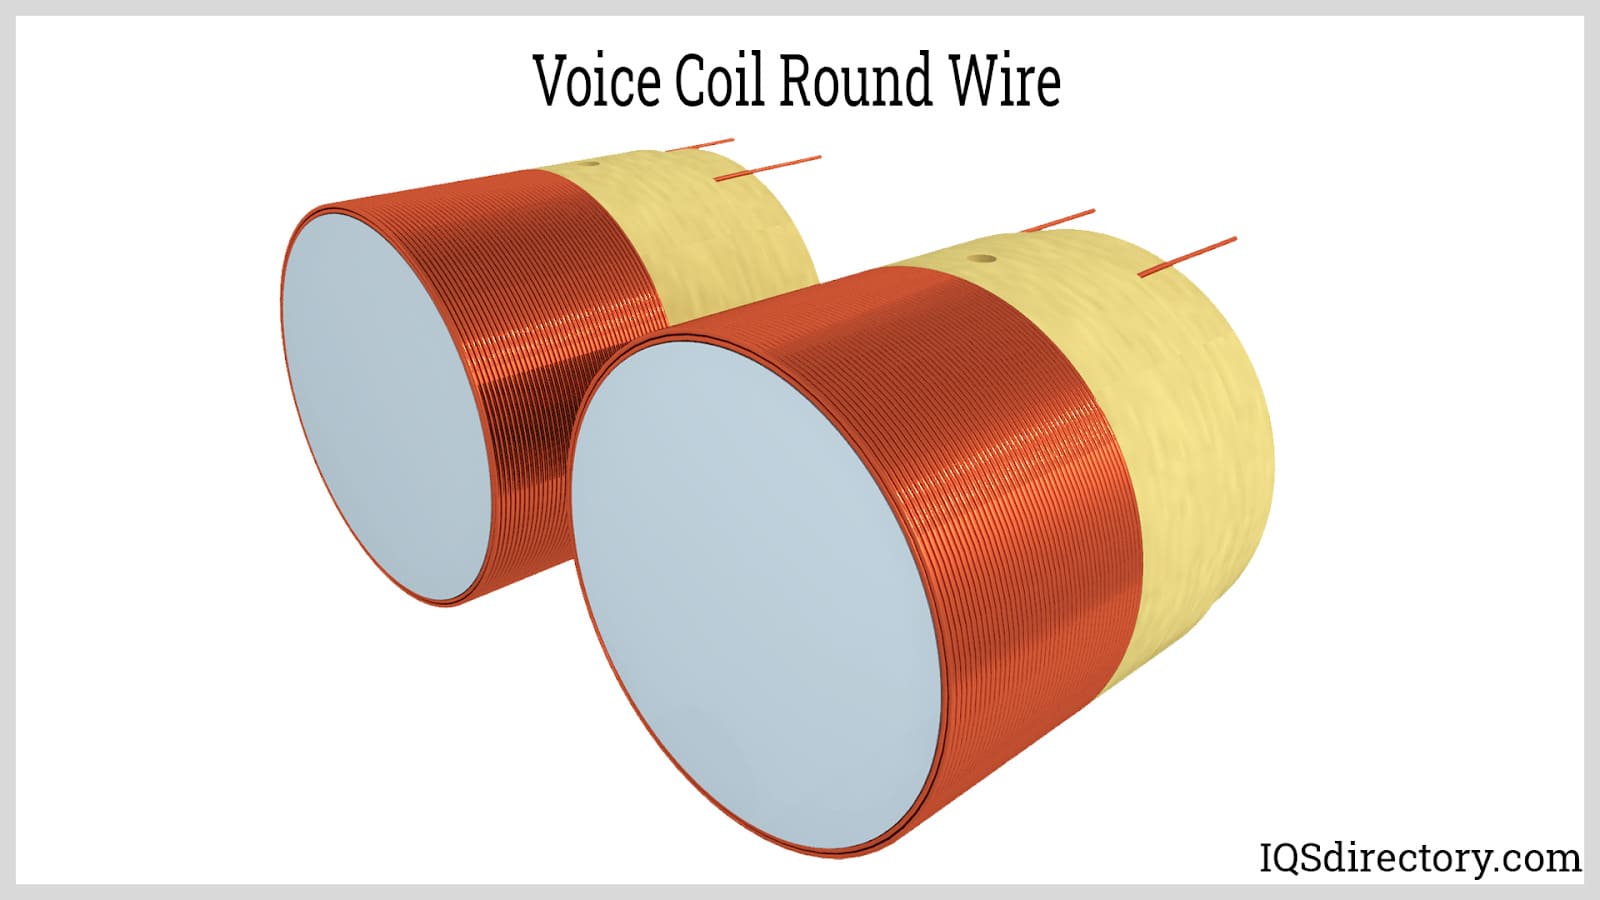 Voice Coil Round Wire